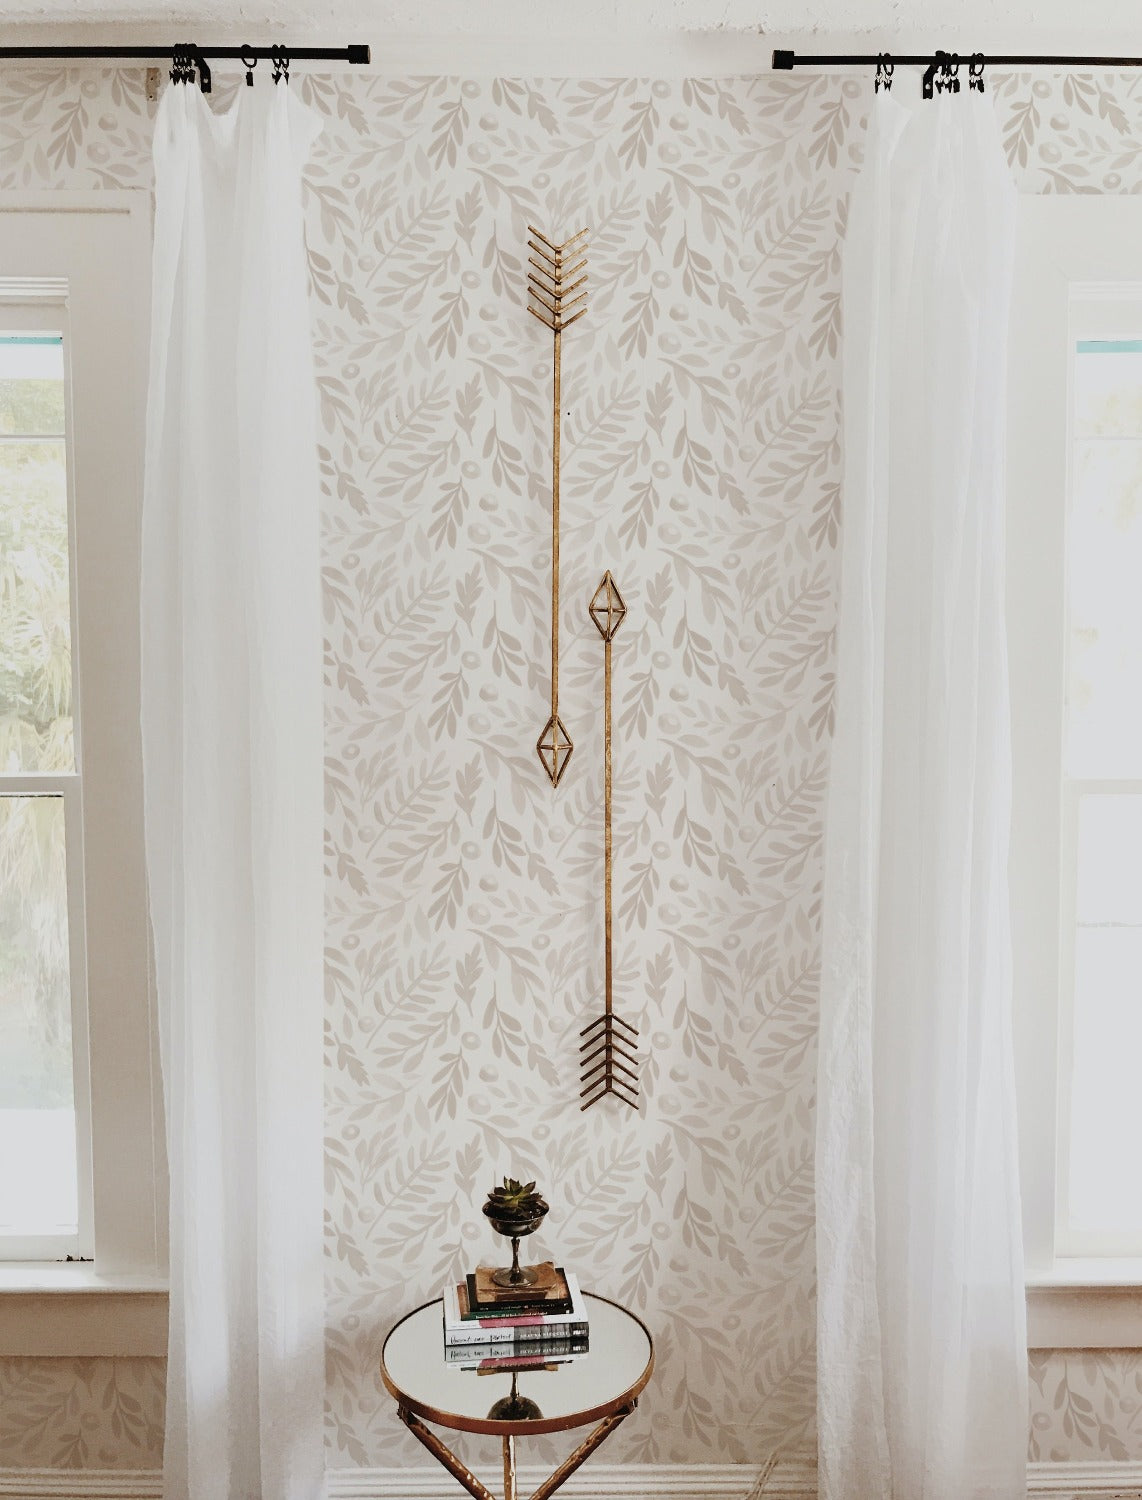 wallpaper, peel and stick wallpaper, Home decor, subtle botanica wallpaper, Floral wallpaper, bedroom wallpaper, linen wallpaper,